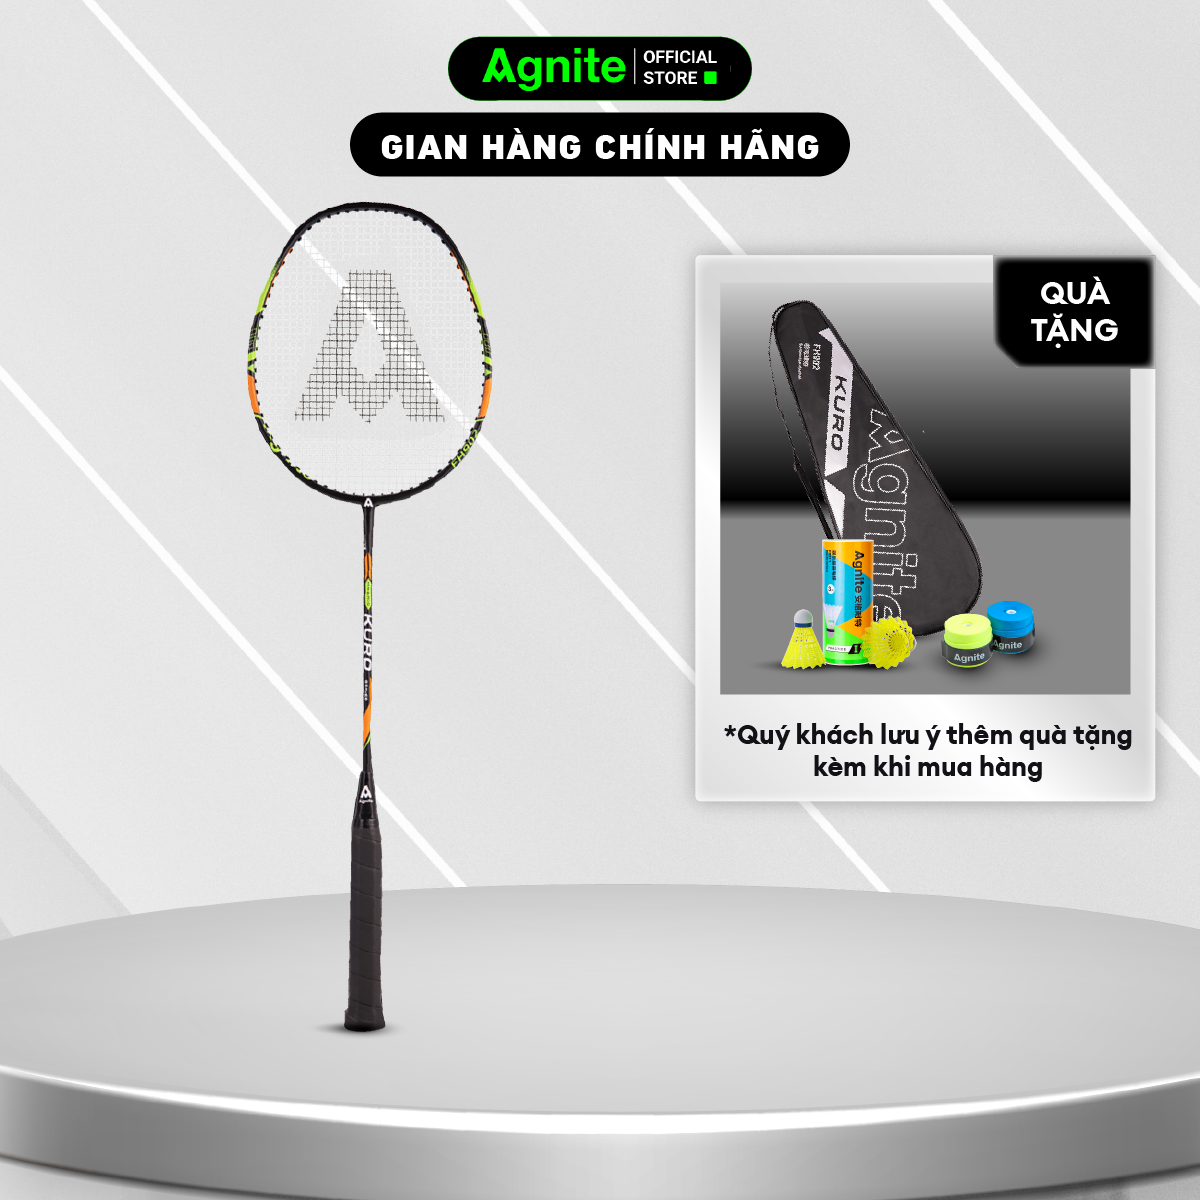 Hình ảnh 1 chiếc vợt đơn thiết kế mới, bền, đẹp, siêu nhẹ chính hãng Agnite tặng kèm túi đựng vợt - FH902